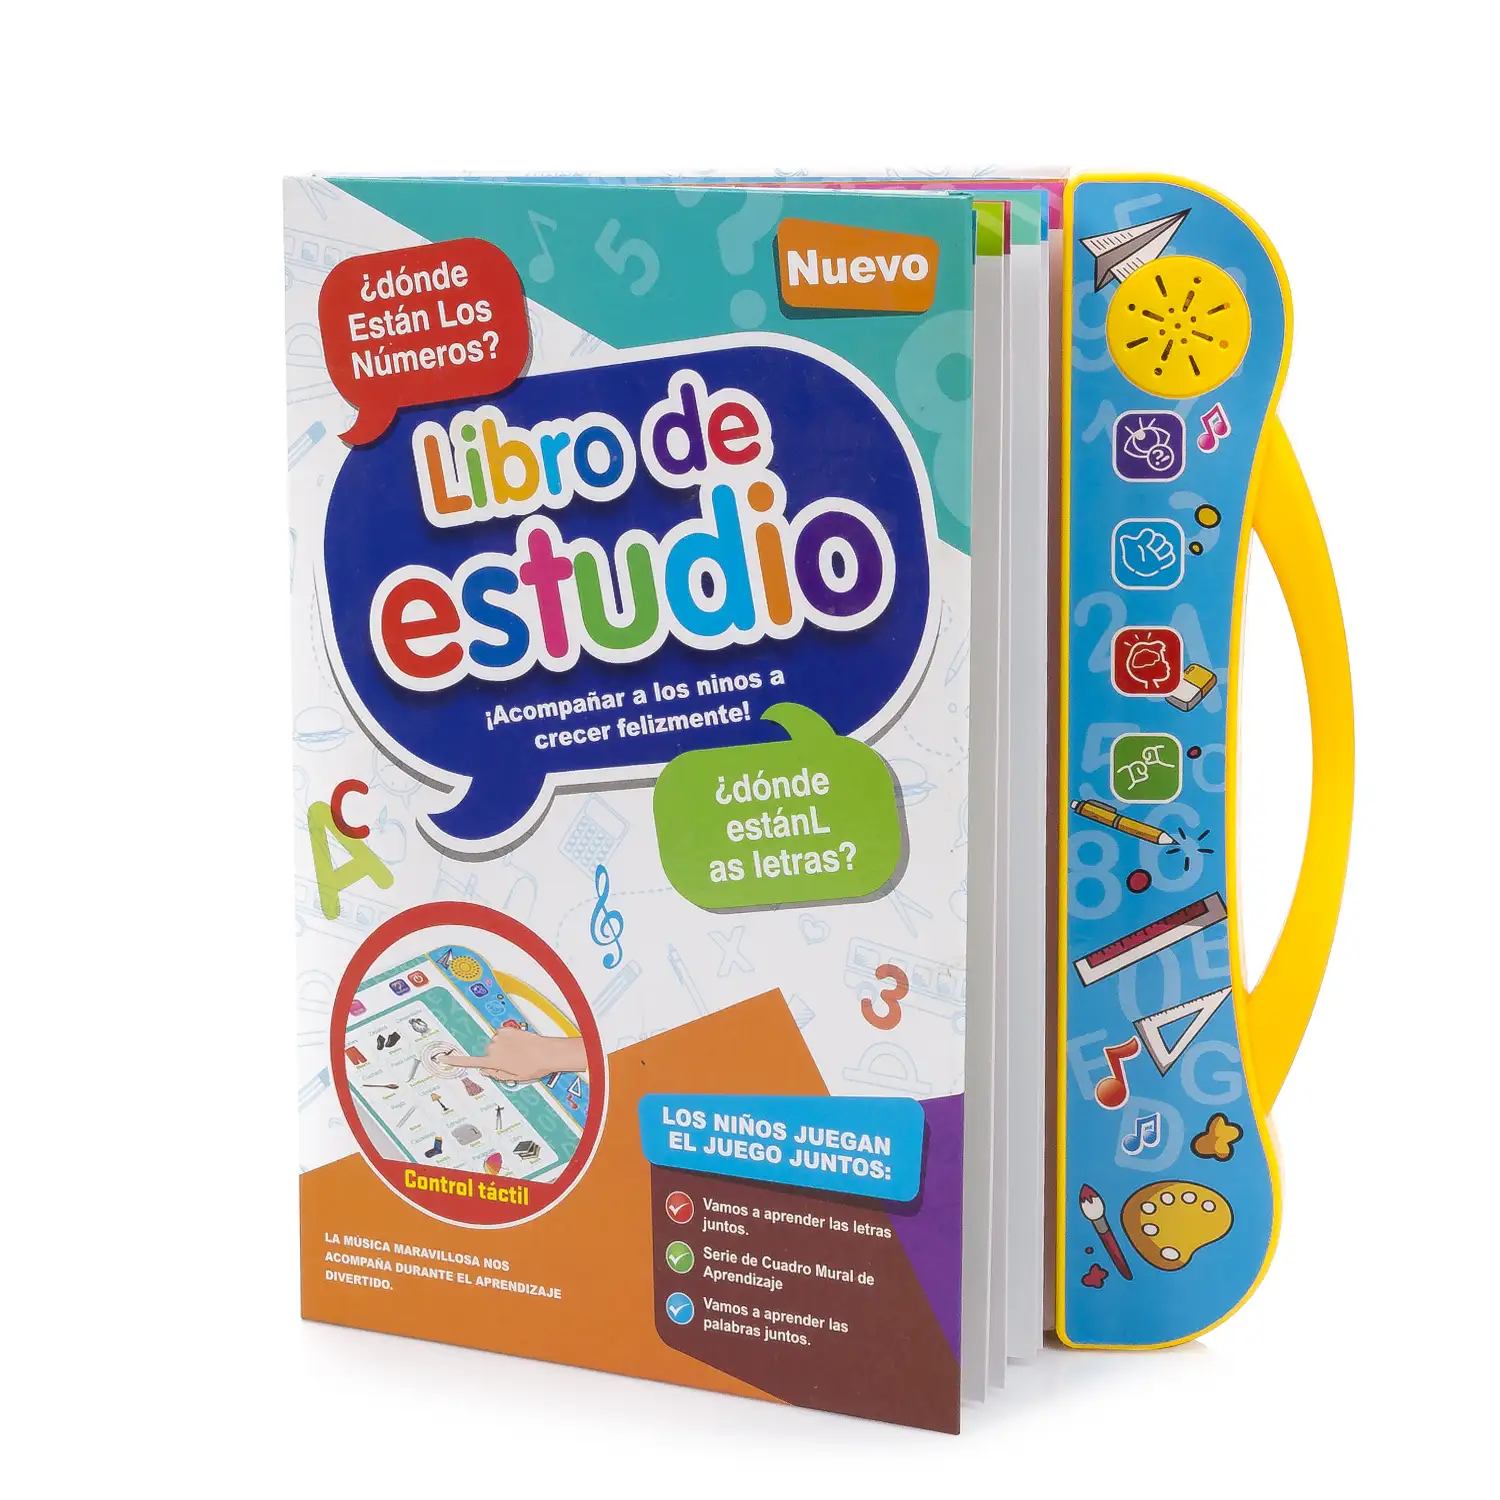 Libro de Estudio, libro electrónico educativo con sonidos, bilingüe en español e inglés. Actividades matemáticas, lengua, creativas.